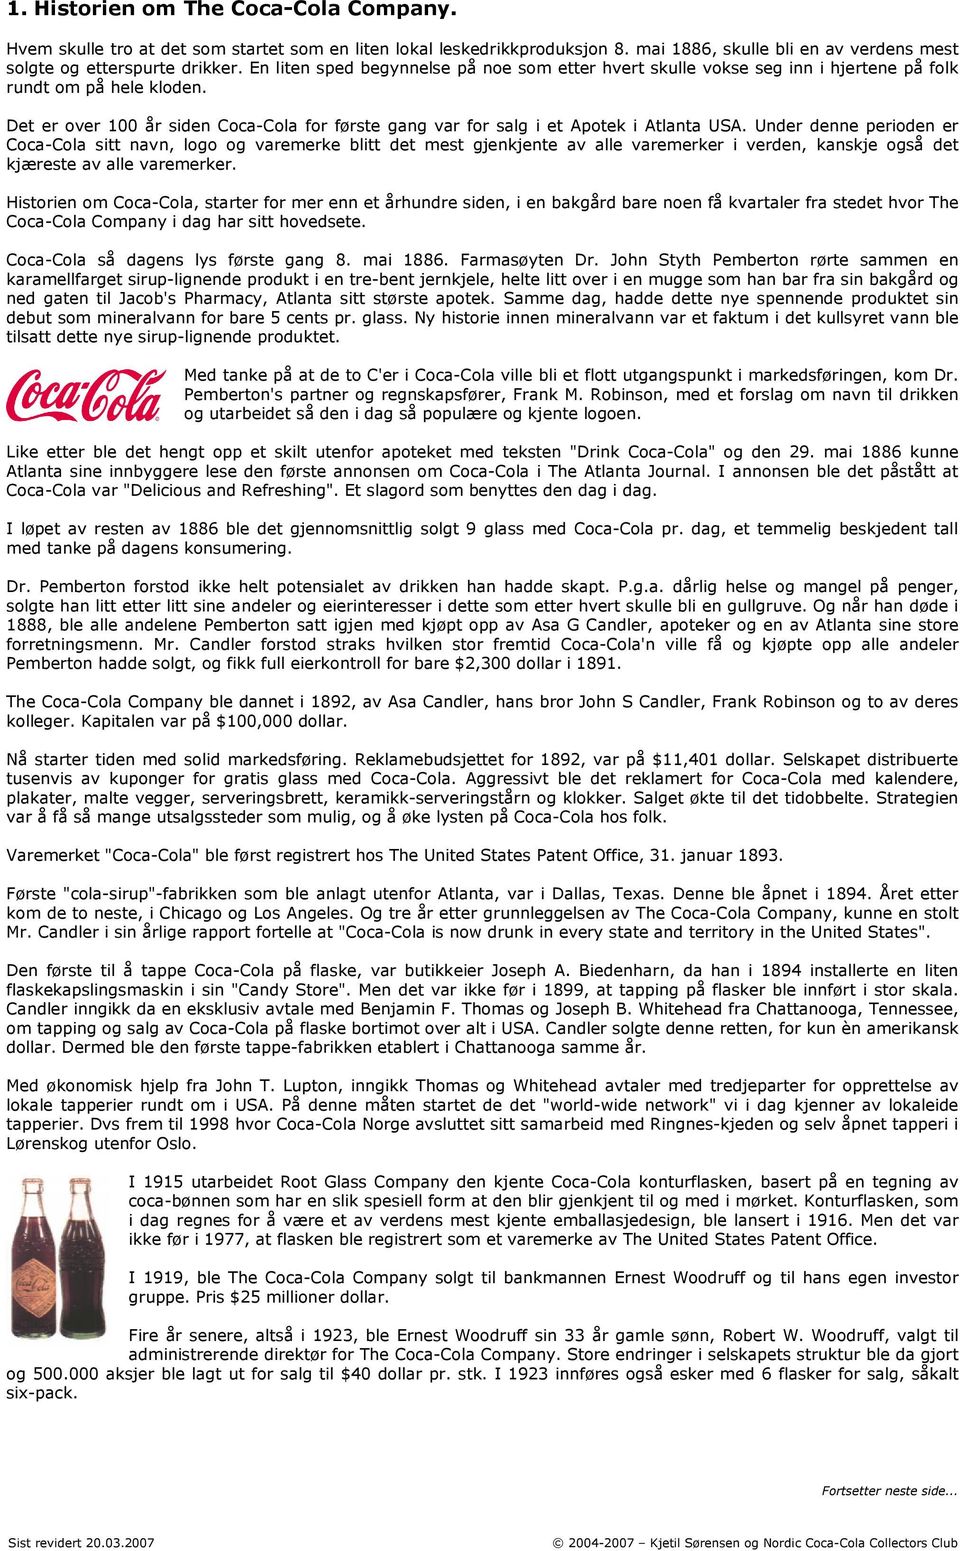 Det er over 100 år siden Coca-Cola for første gang var for salg i et Apotek i Atlanta USA.